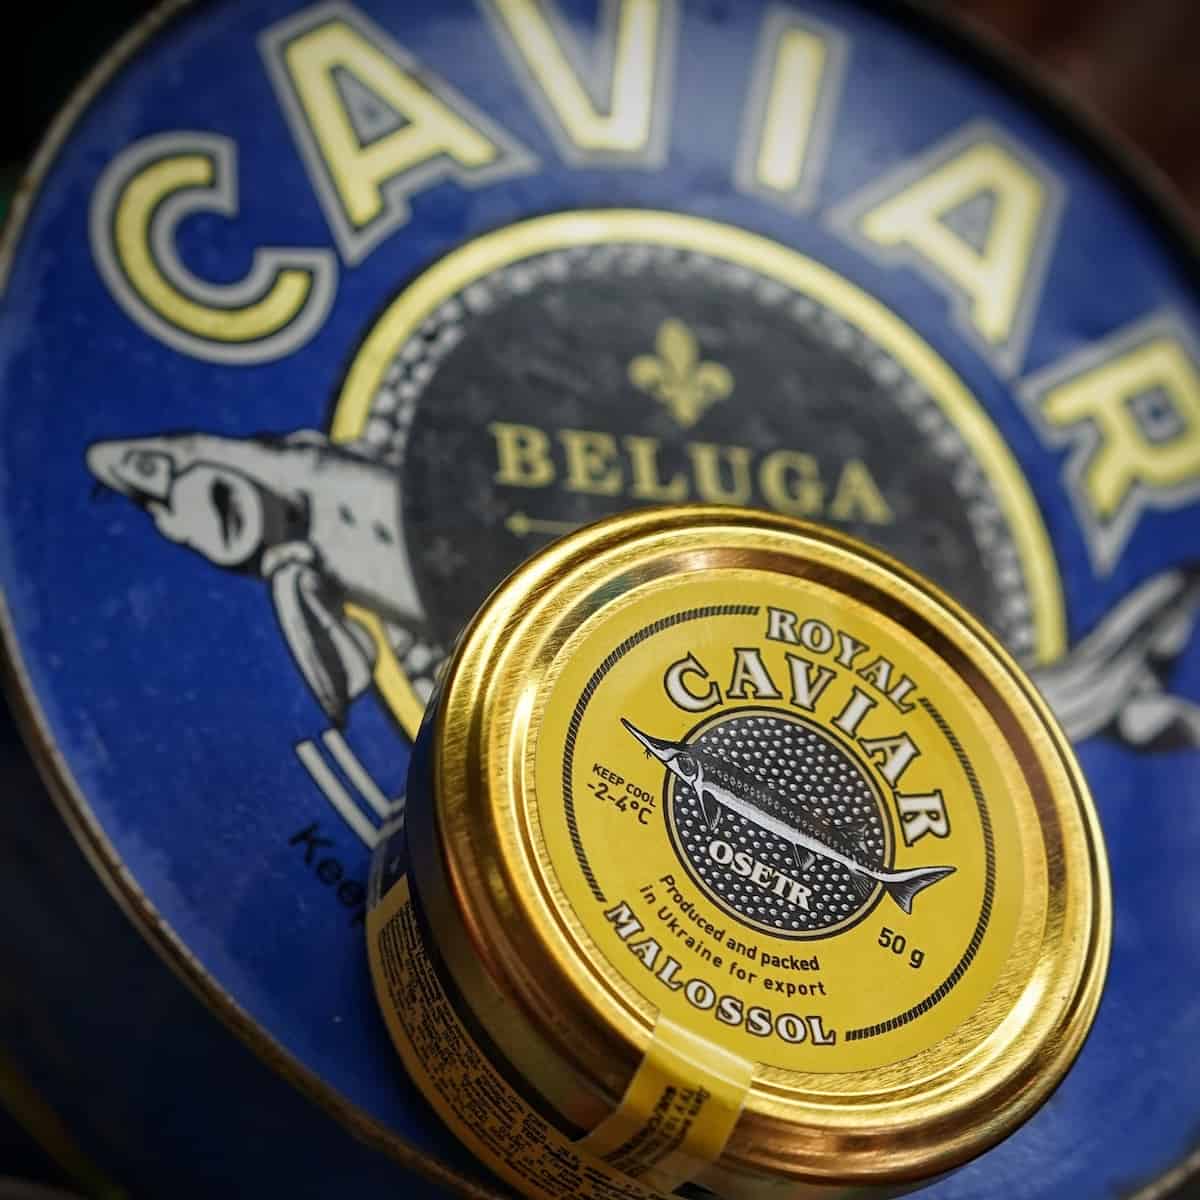 A-tin-of-Osetra-caviar-on-top-of-a-tin-of-beluga-caviar.